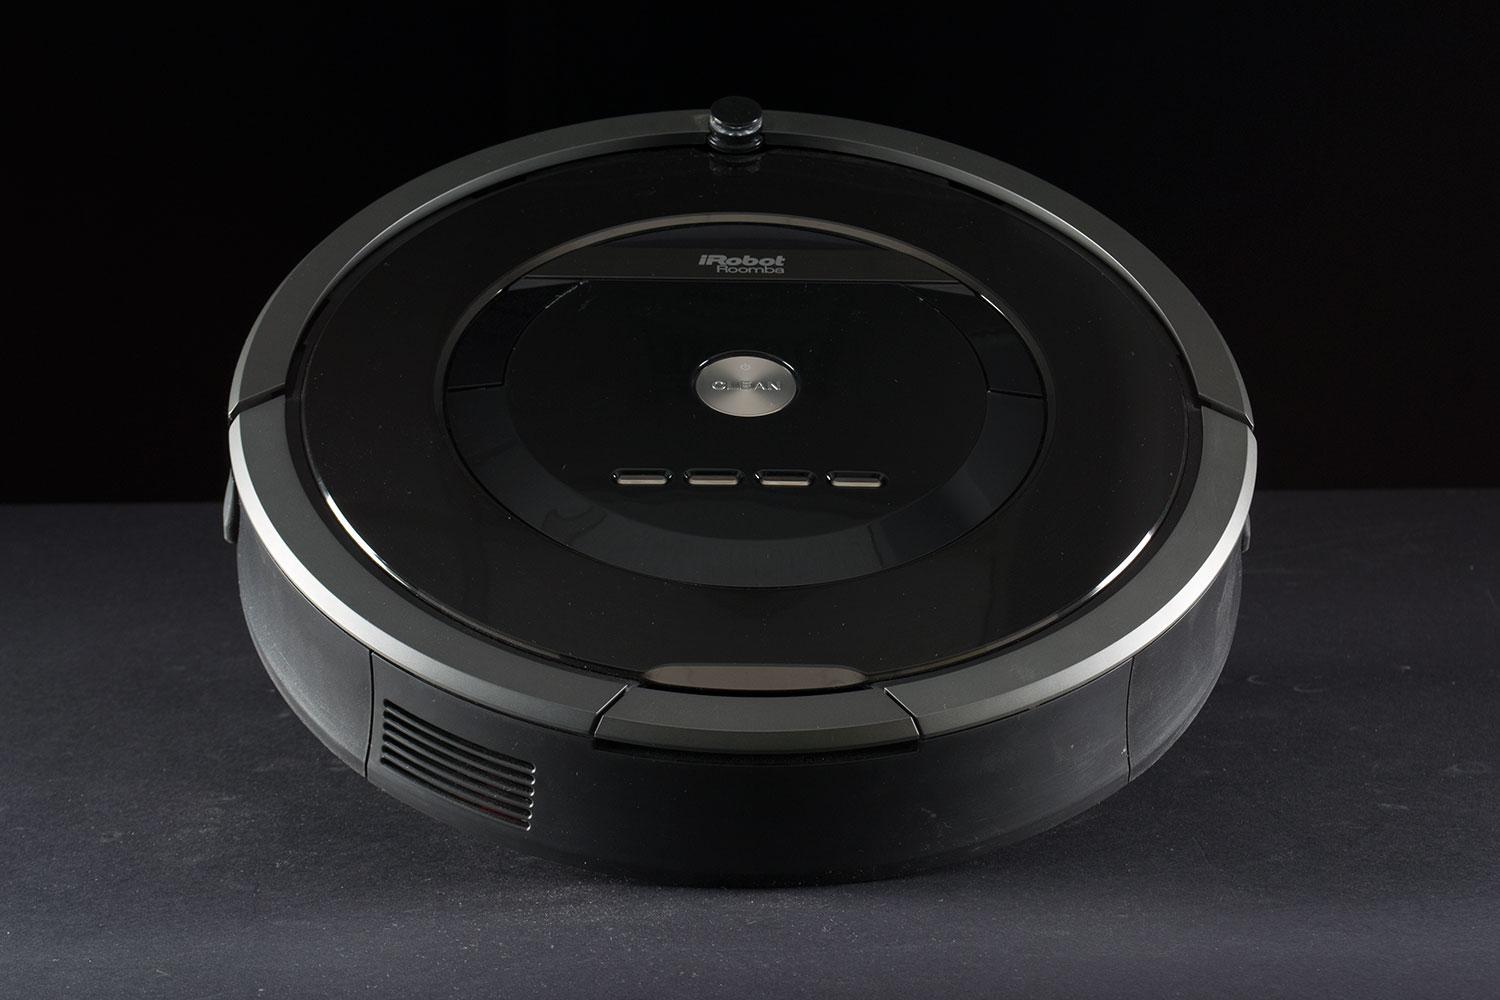 Cómo funciona Roomba 880: análisis, características y precio